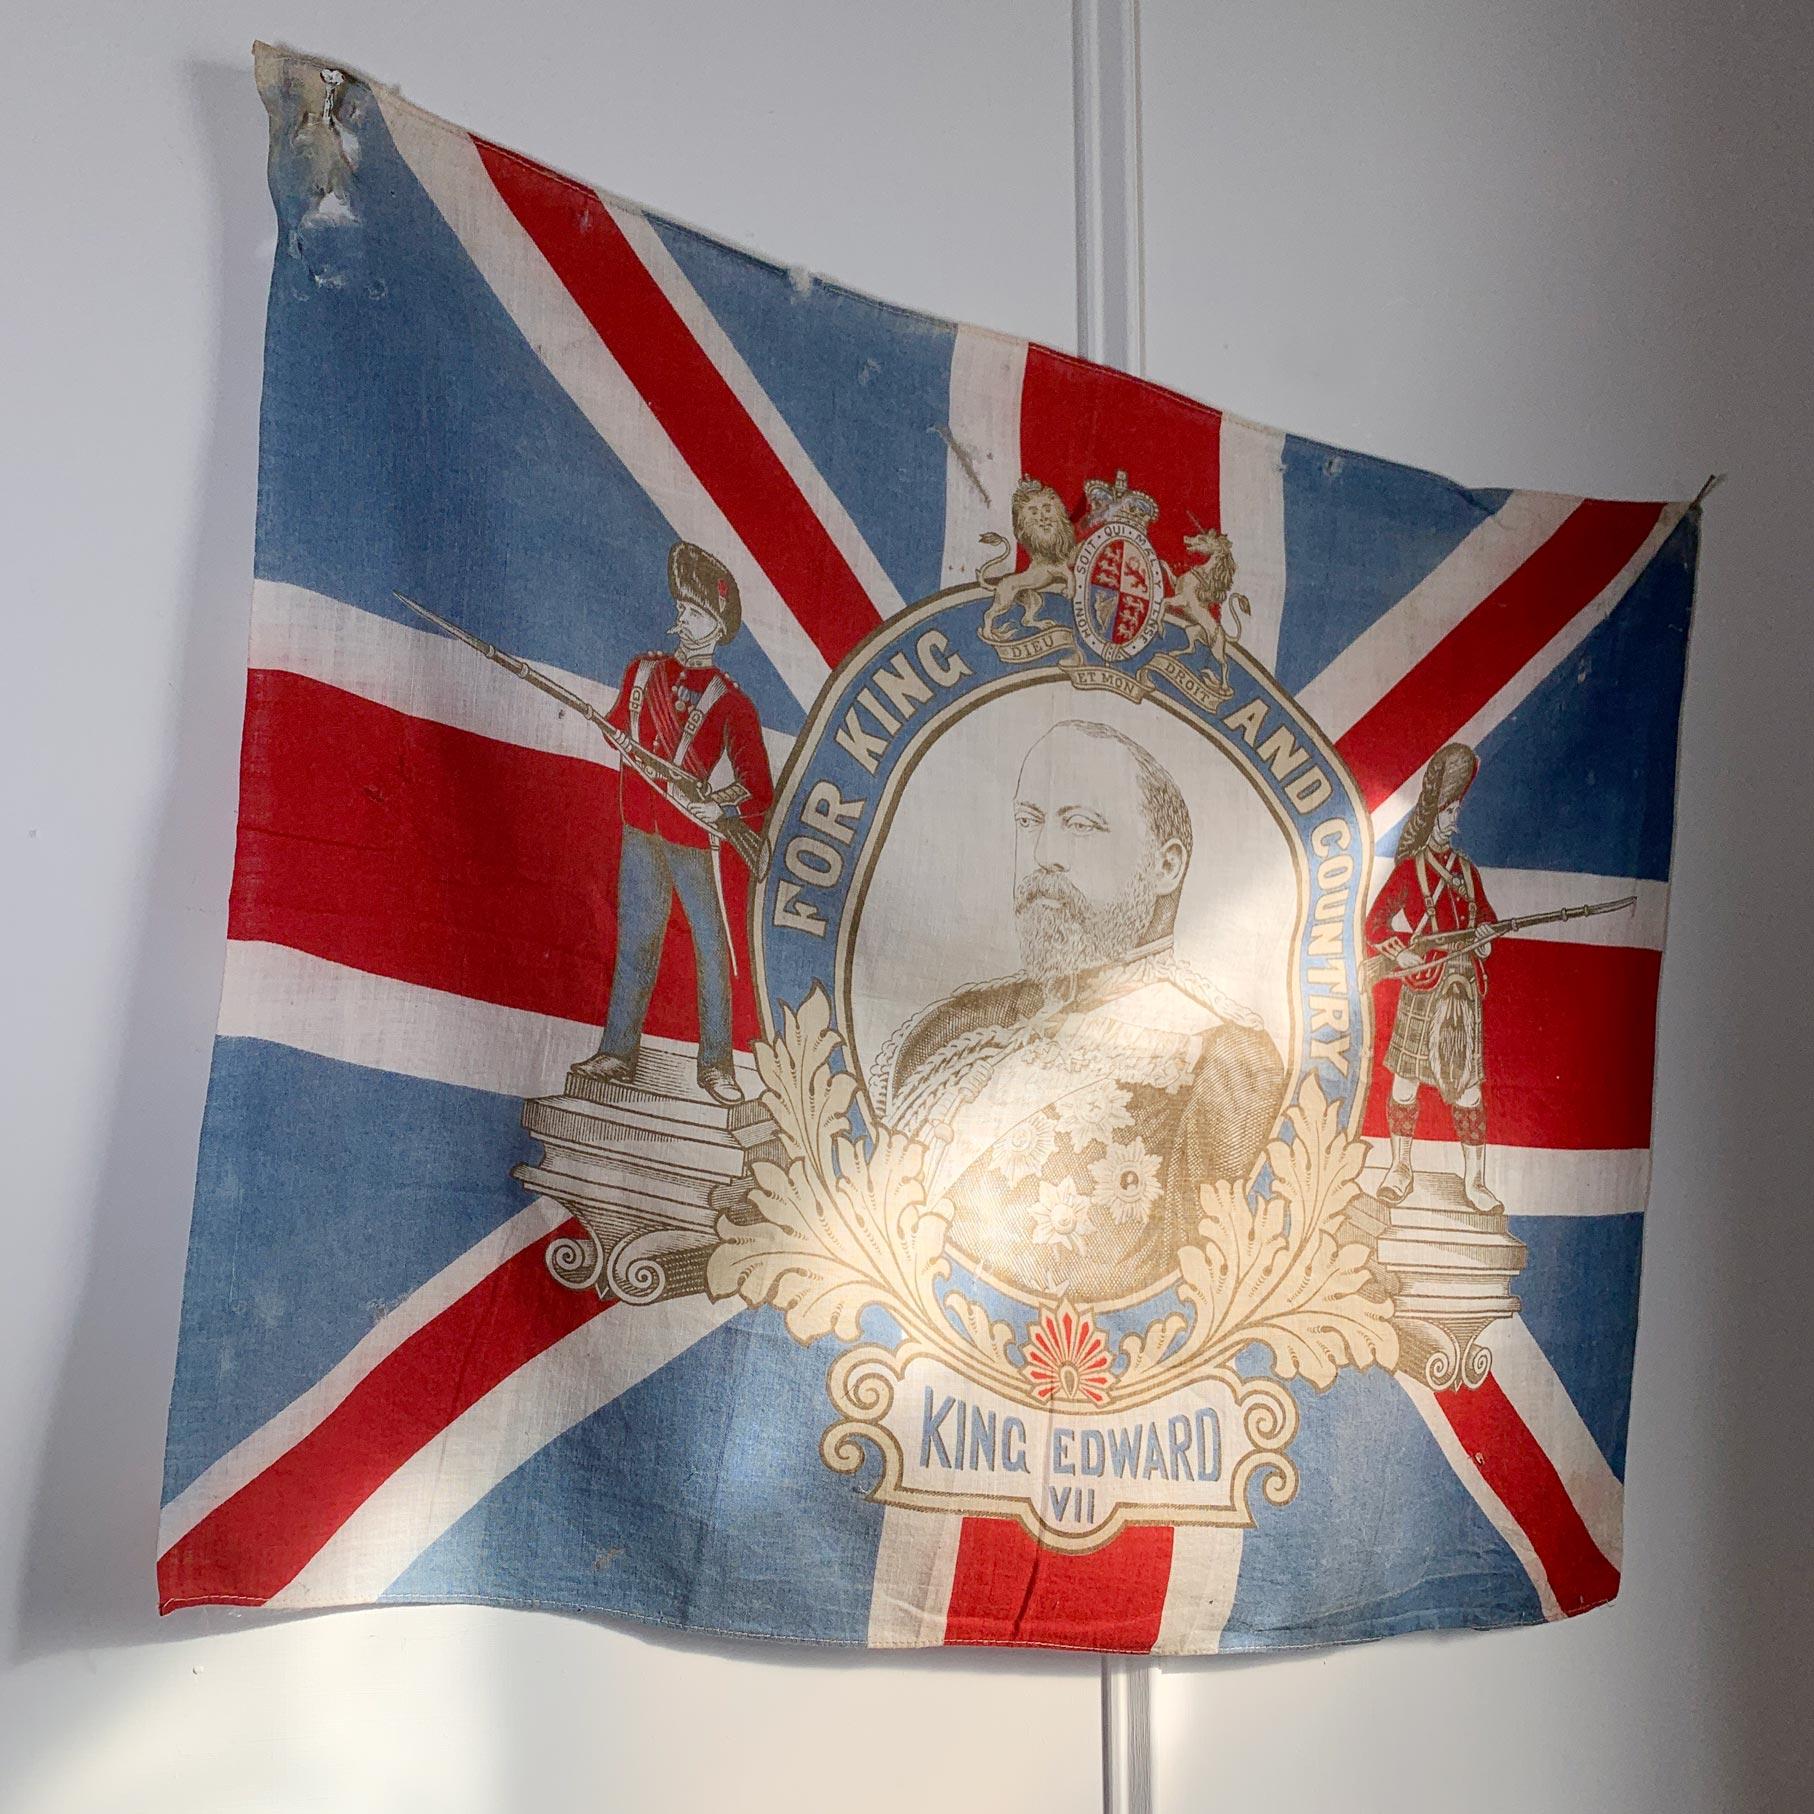 La famille royale britannique

Un drapeau rare et historique du couronnement du roi Édouard VII. Ce drapeau a été produit pour commémorer le couronnement du roi Édouard VII en 1902. 

Edward a 59 ans lorsqu'il devient roi le 22 janvier 1901, à